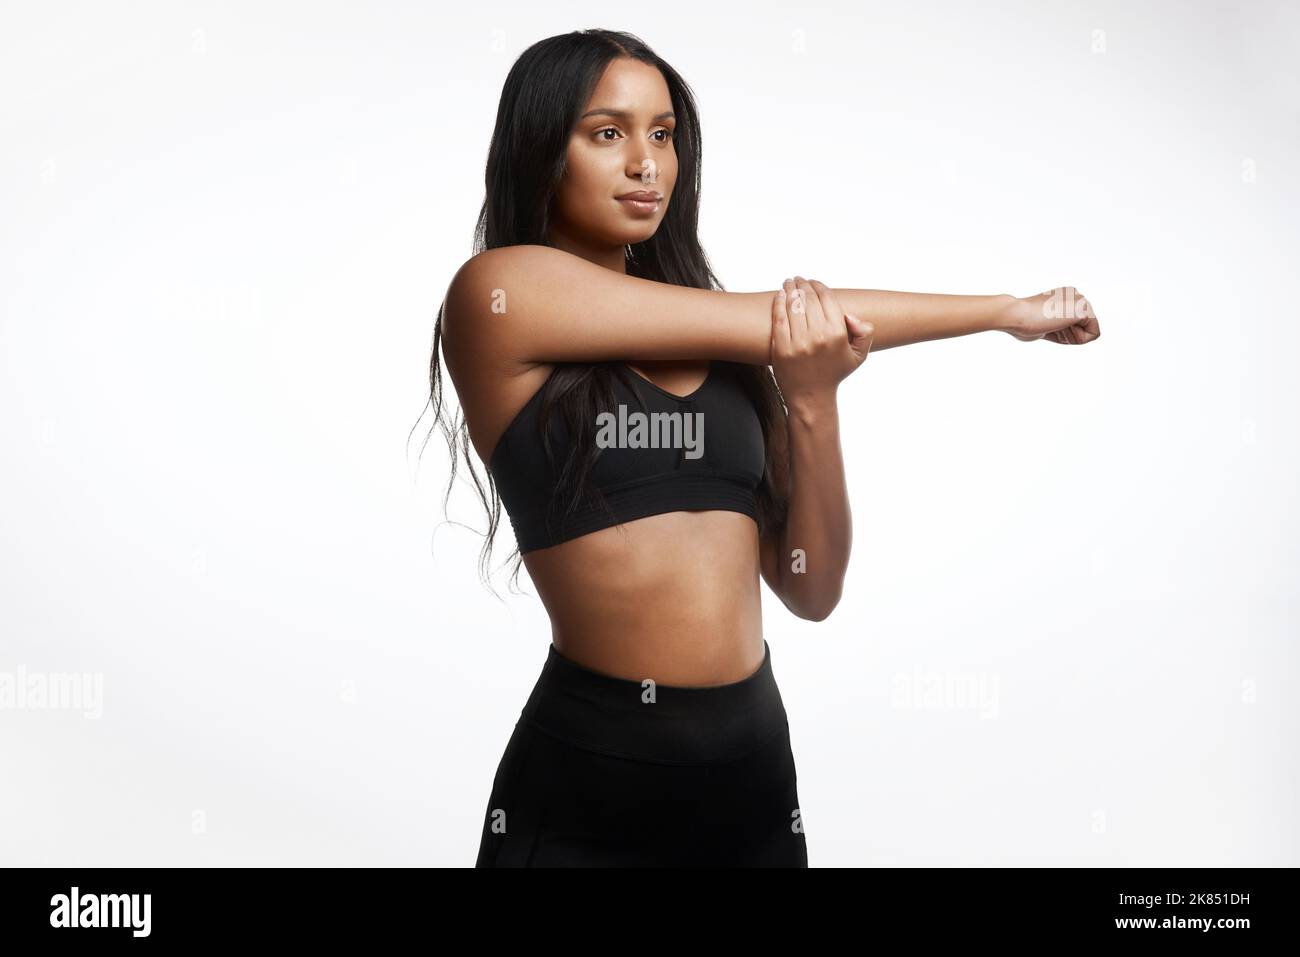 Richtig dehnen kann Muskelkater verringern. Studioaufnahme einer sportlichen jungen Frau, die ihre Arme vor weißem Hintergrund streckt. Stockfoto